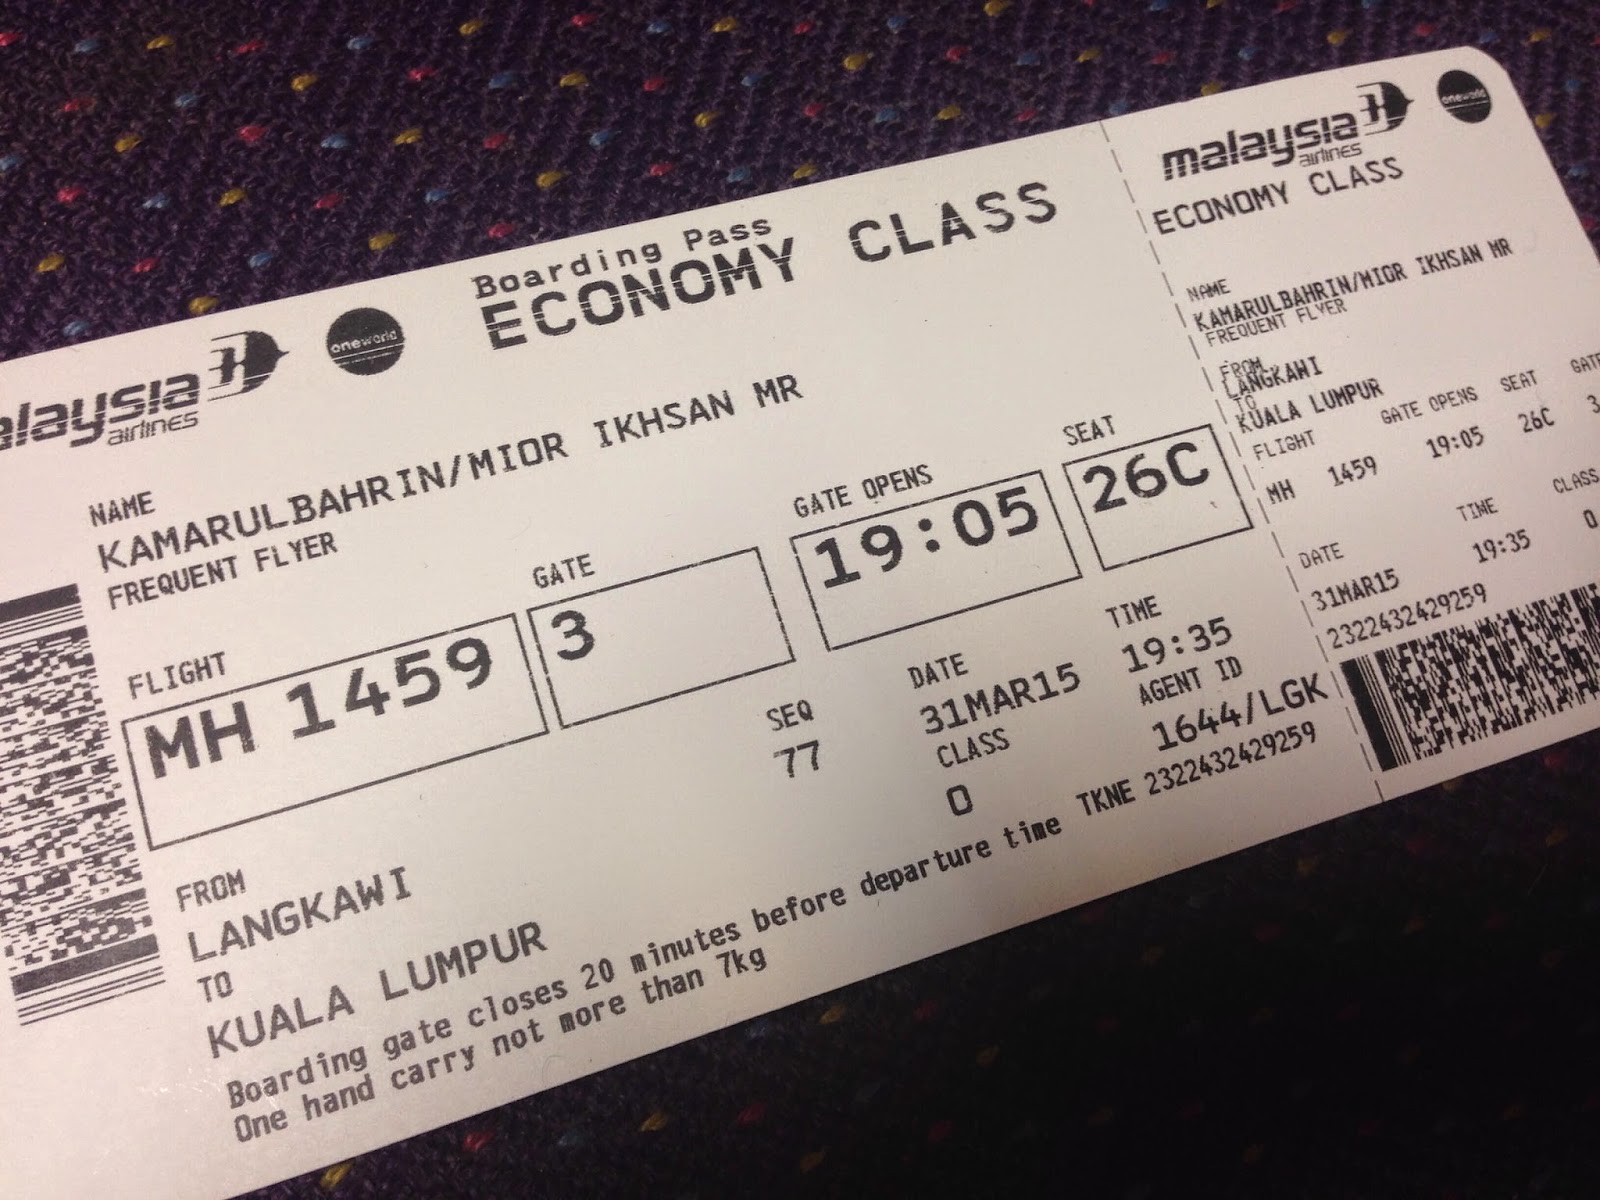 Harga tiket flight ke langkawi 2021